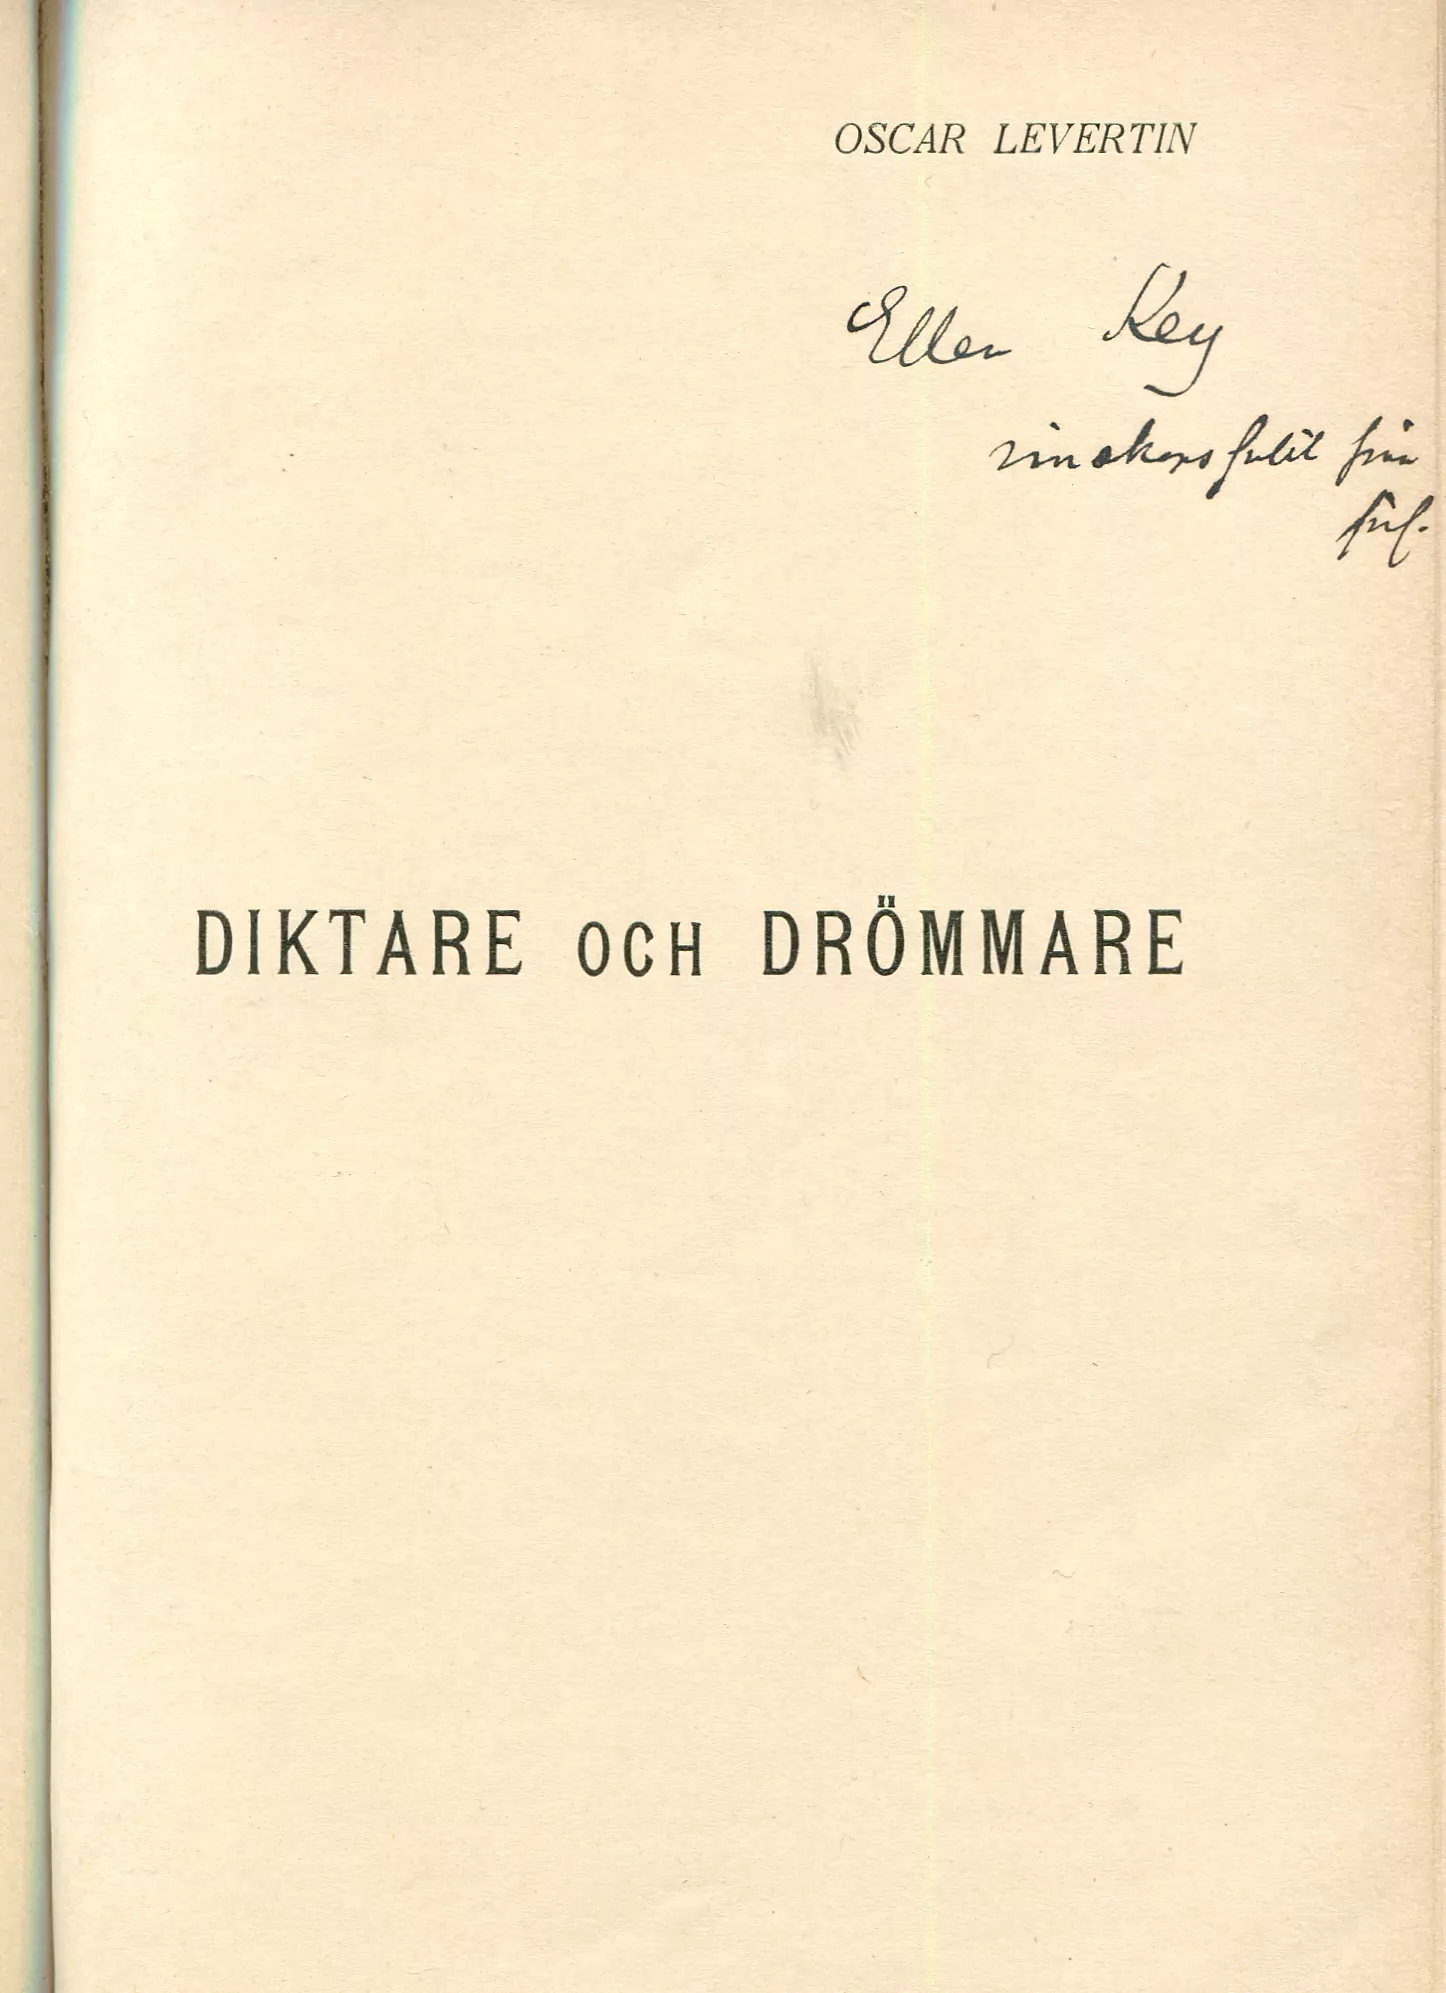 Diktare och drömmare, Stockholm 1898